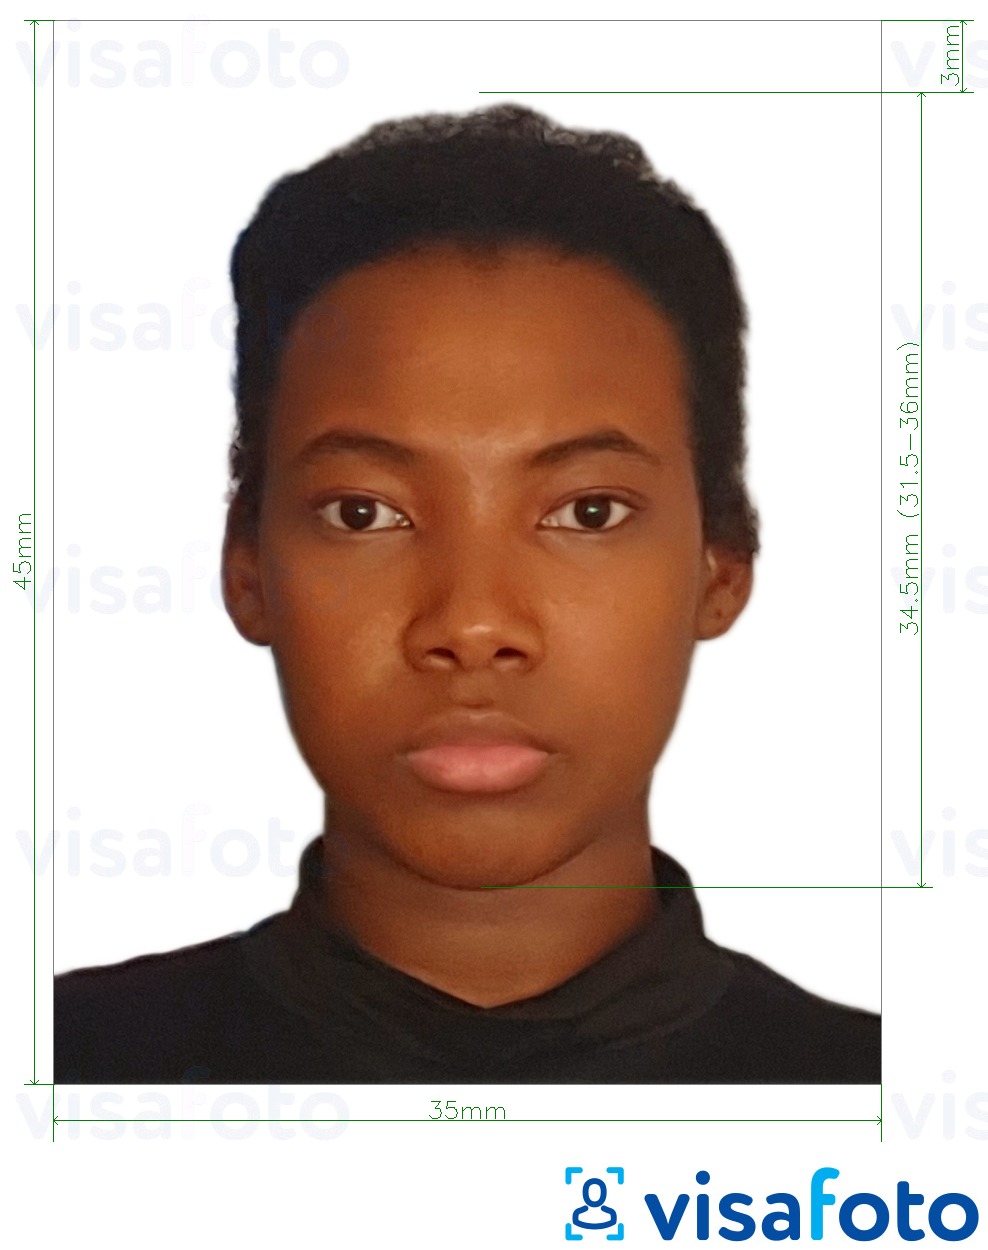 Voorbeeld van foto voor Malawi paspoort 4.5x3.5 cm (45x35 mm) met exacte maatspecificatie